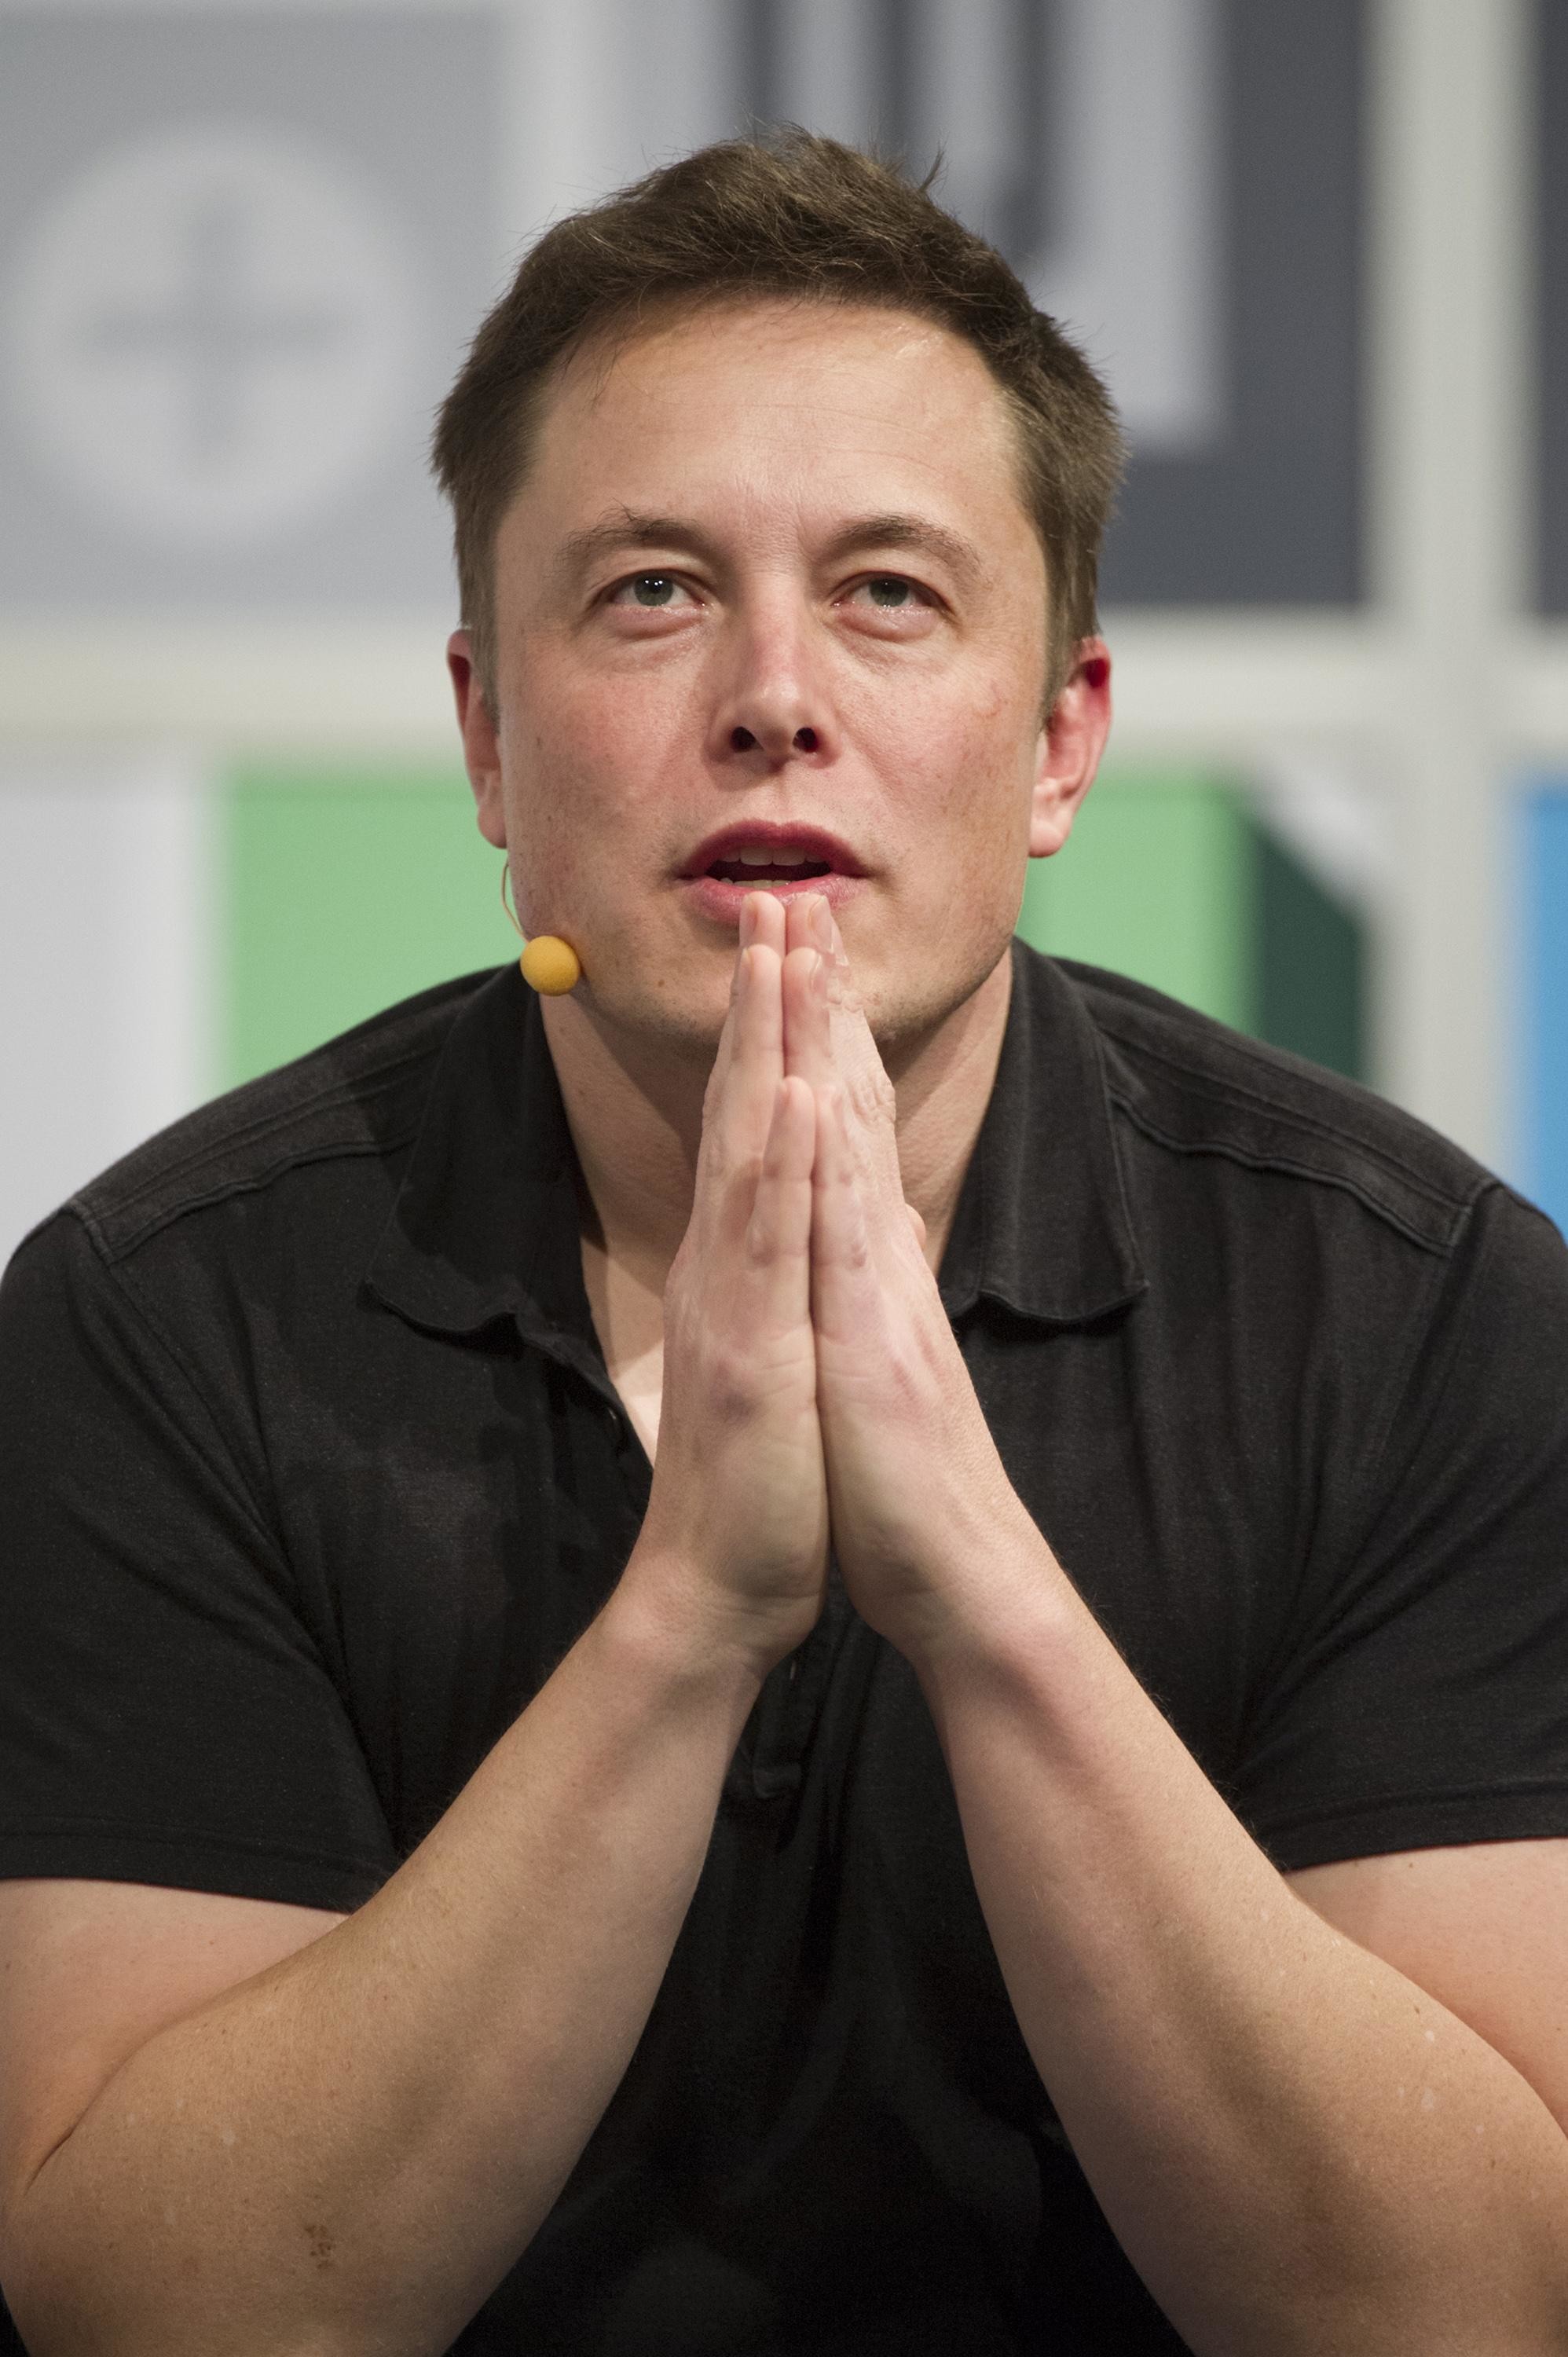 Teslas Musk outlines vision for futuristic Hyperloop transport system